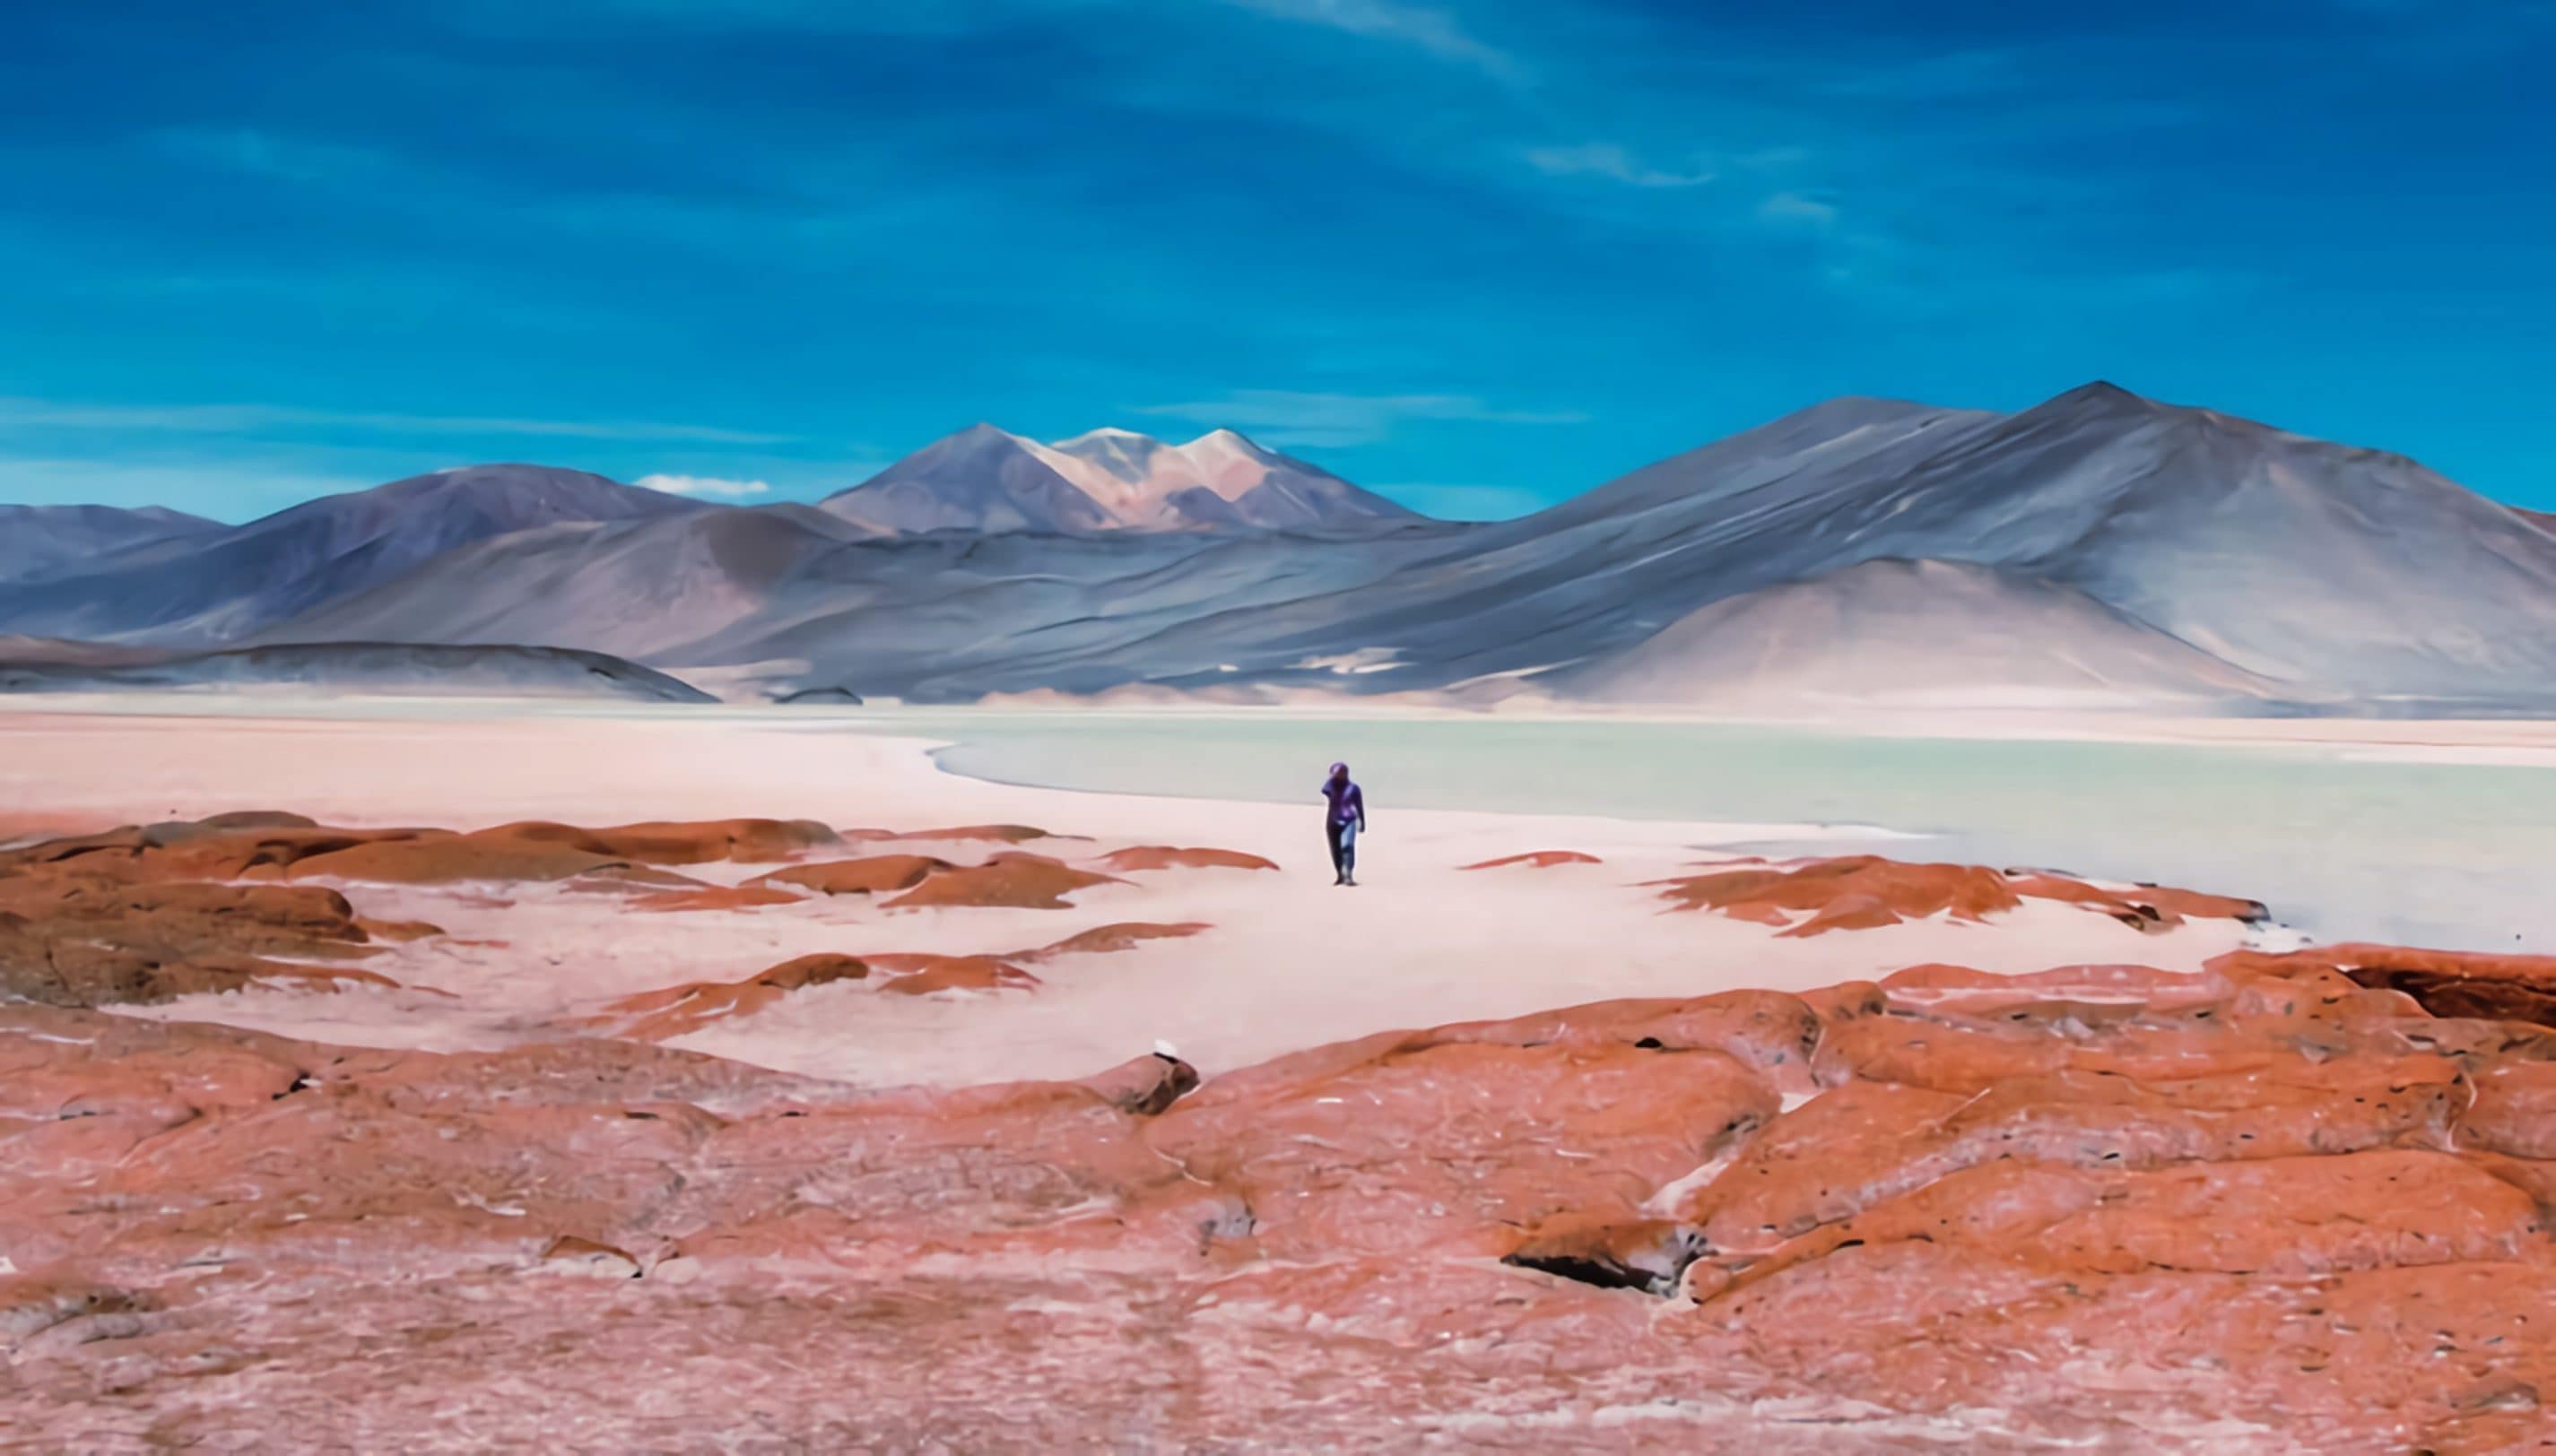 Désert d'Atacama - l'endroit le plus sec sur Terre